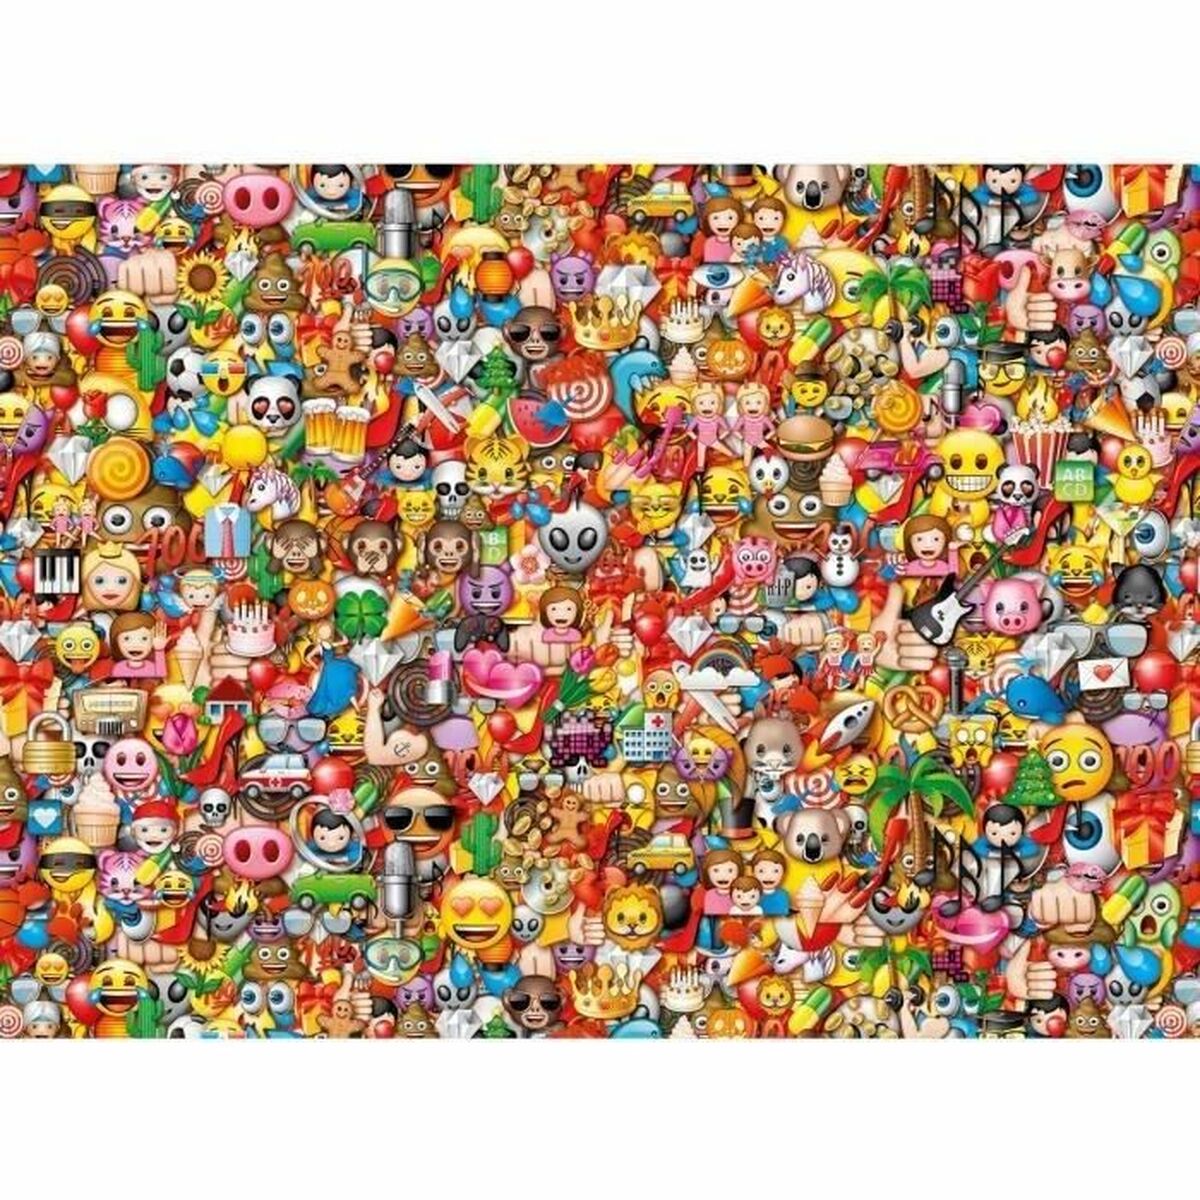 Puzzle Clementoni Emoji: Impossible Puzzle (1000 Pièces)